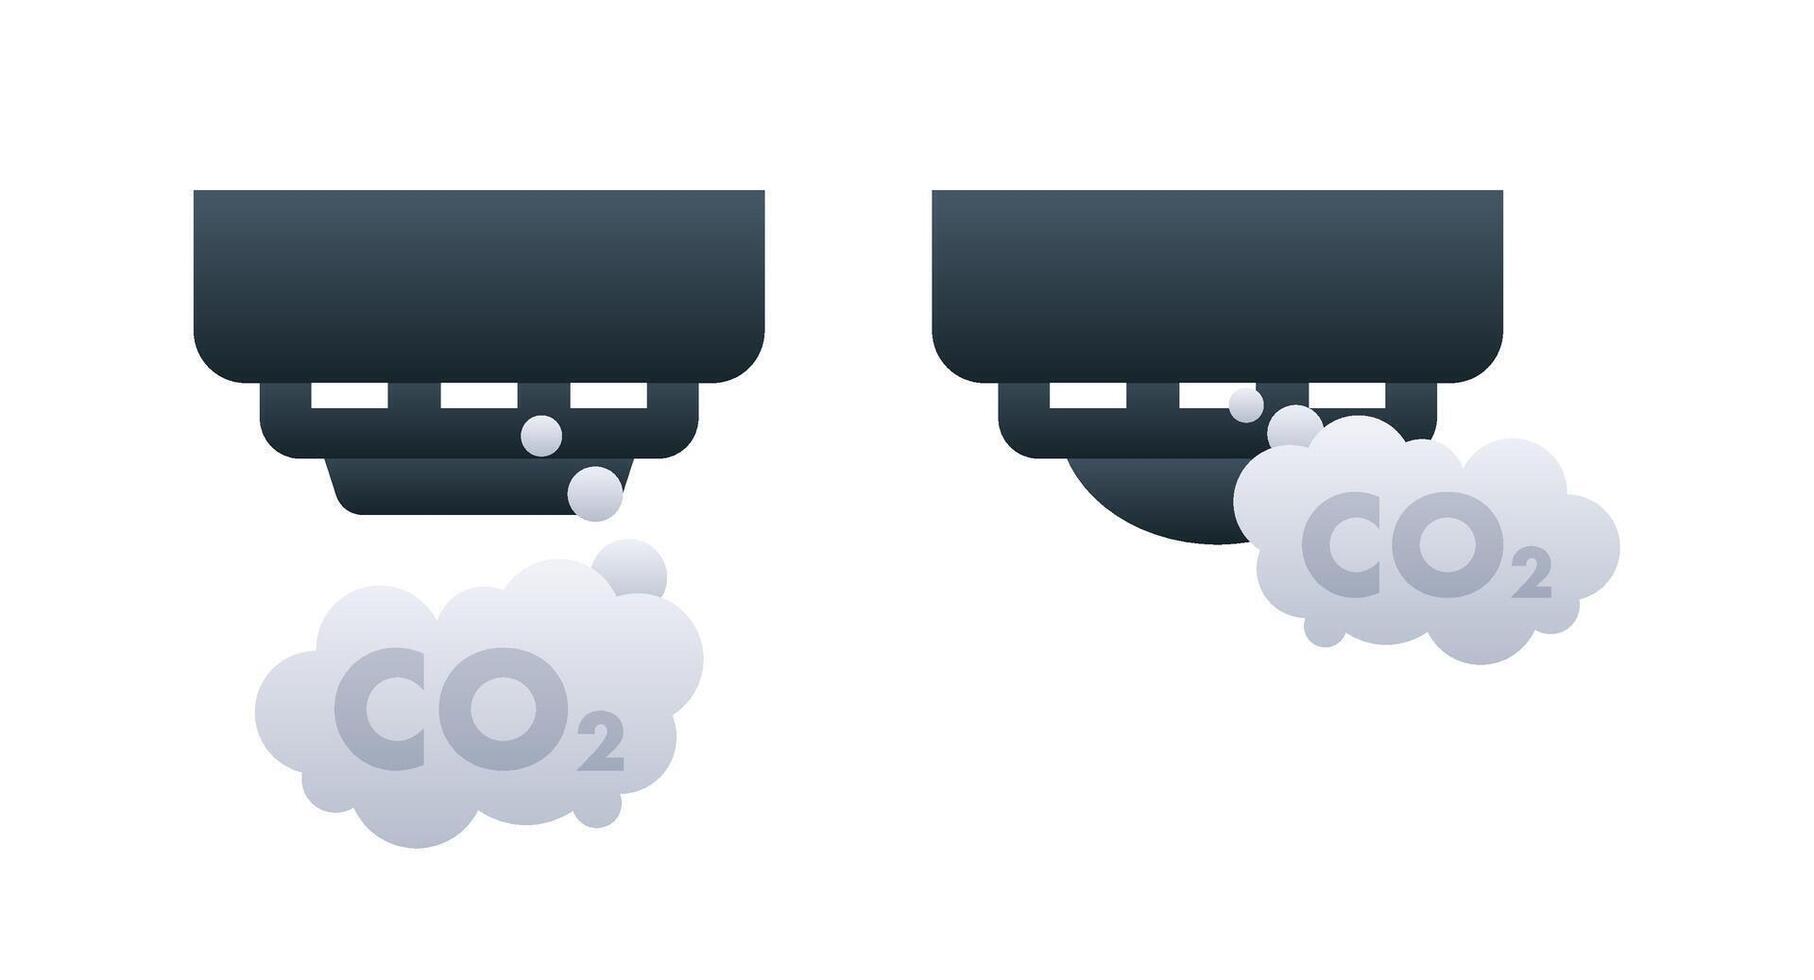 vektor illustration av fordon uttömma utsläpp med co2 moln representerar luft förorening och miljö- påverkan